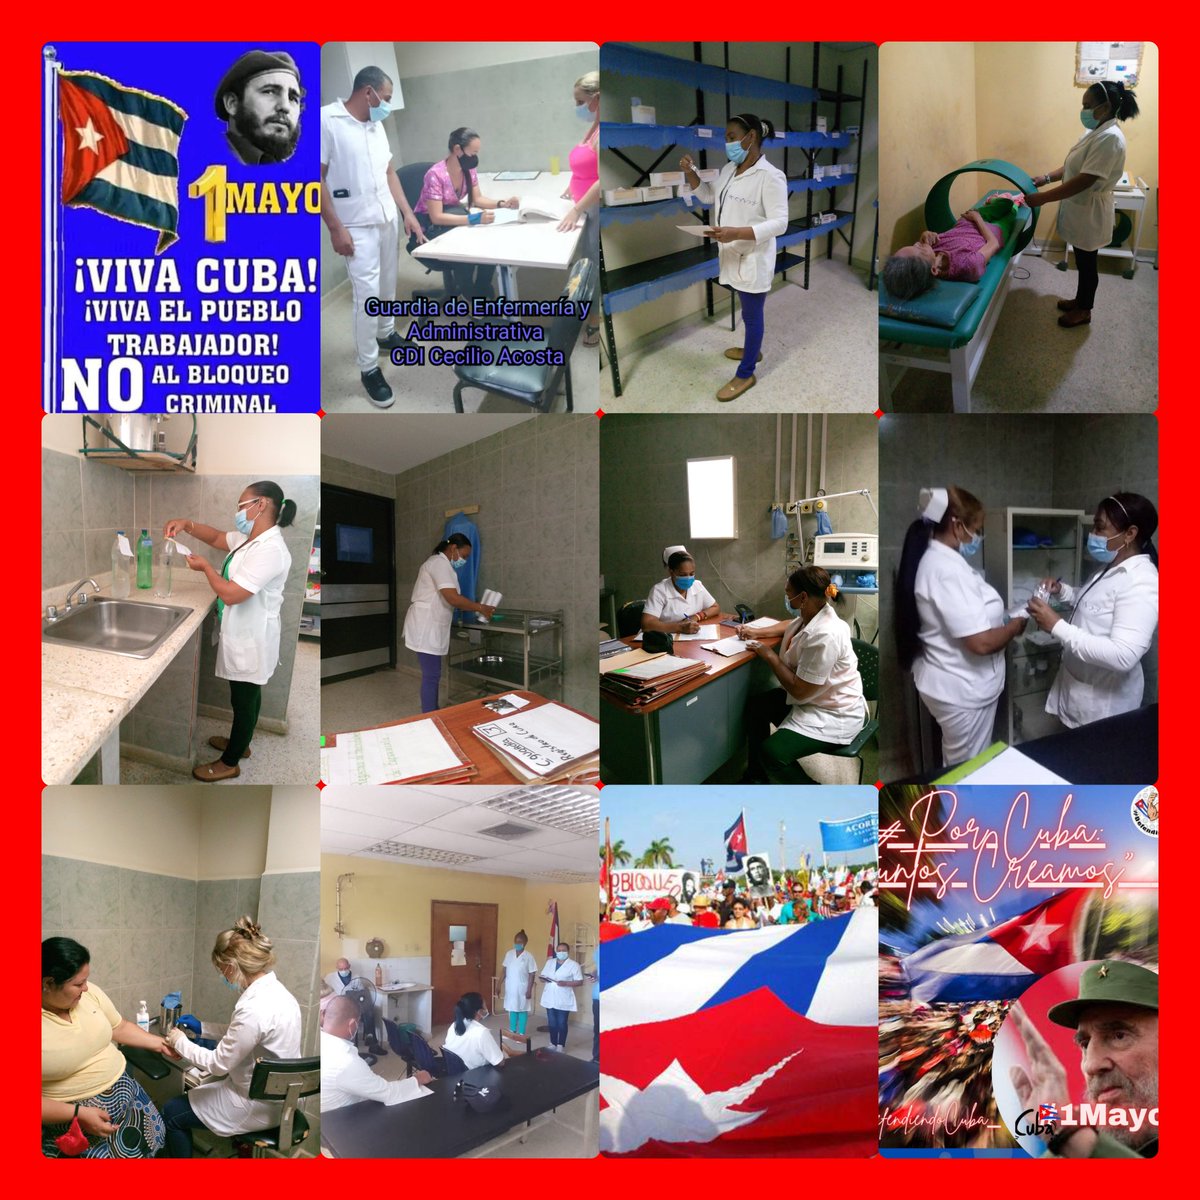 #PorCubaJuntosCreamos 
#CubaPorLaVida 
@cubacooperaven @cubacooperaZul @AlaynOliva #1Mayo